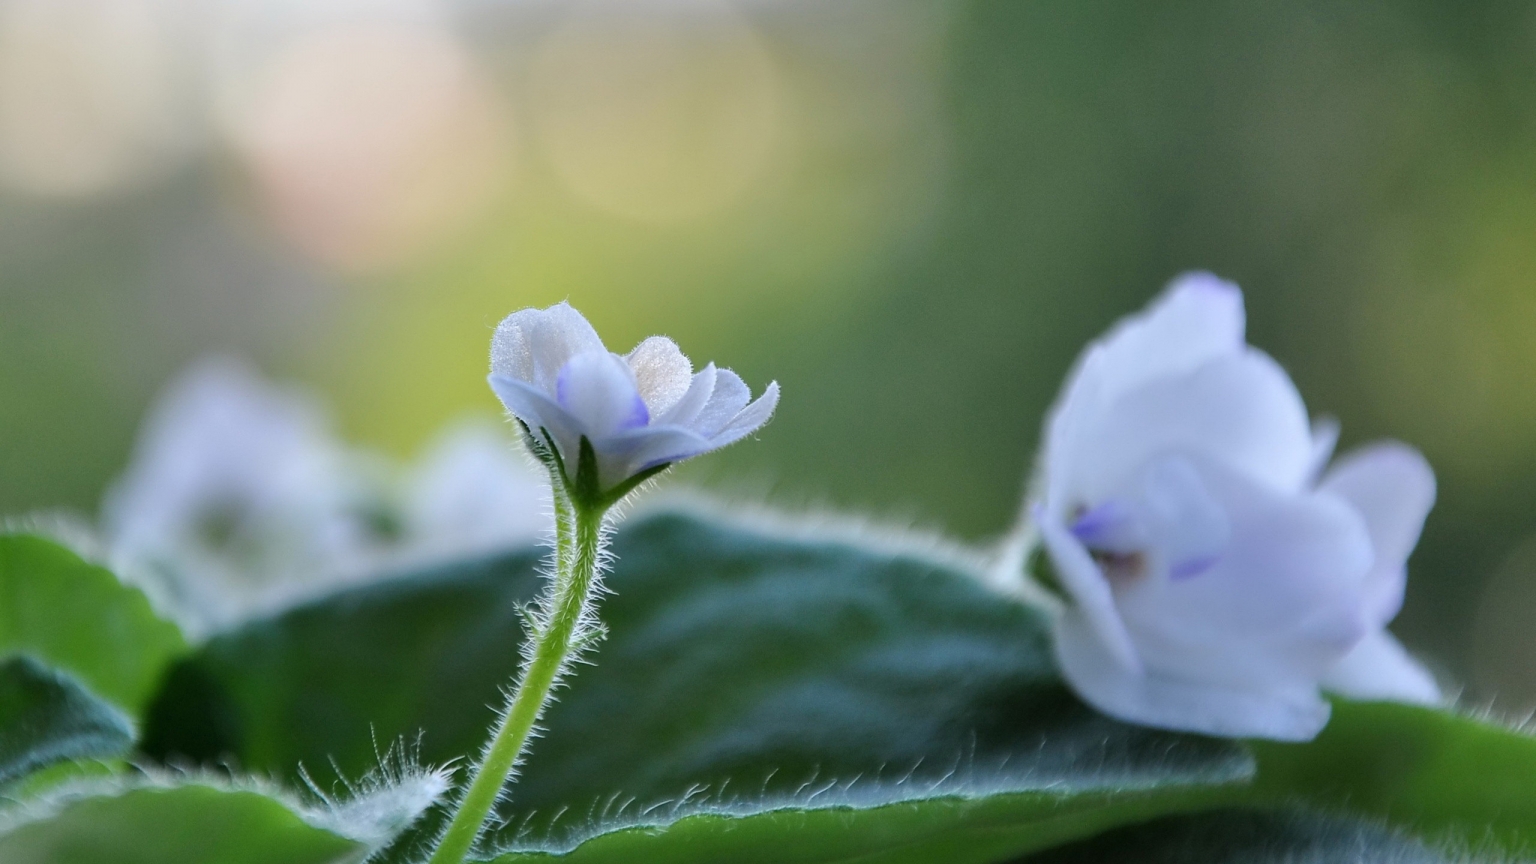 White Cute Flower for 1536 x 864 HDTV resolution